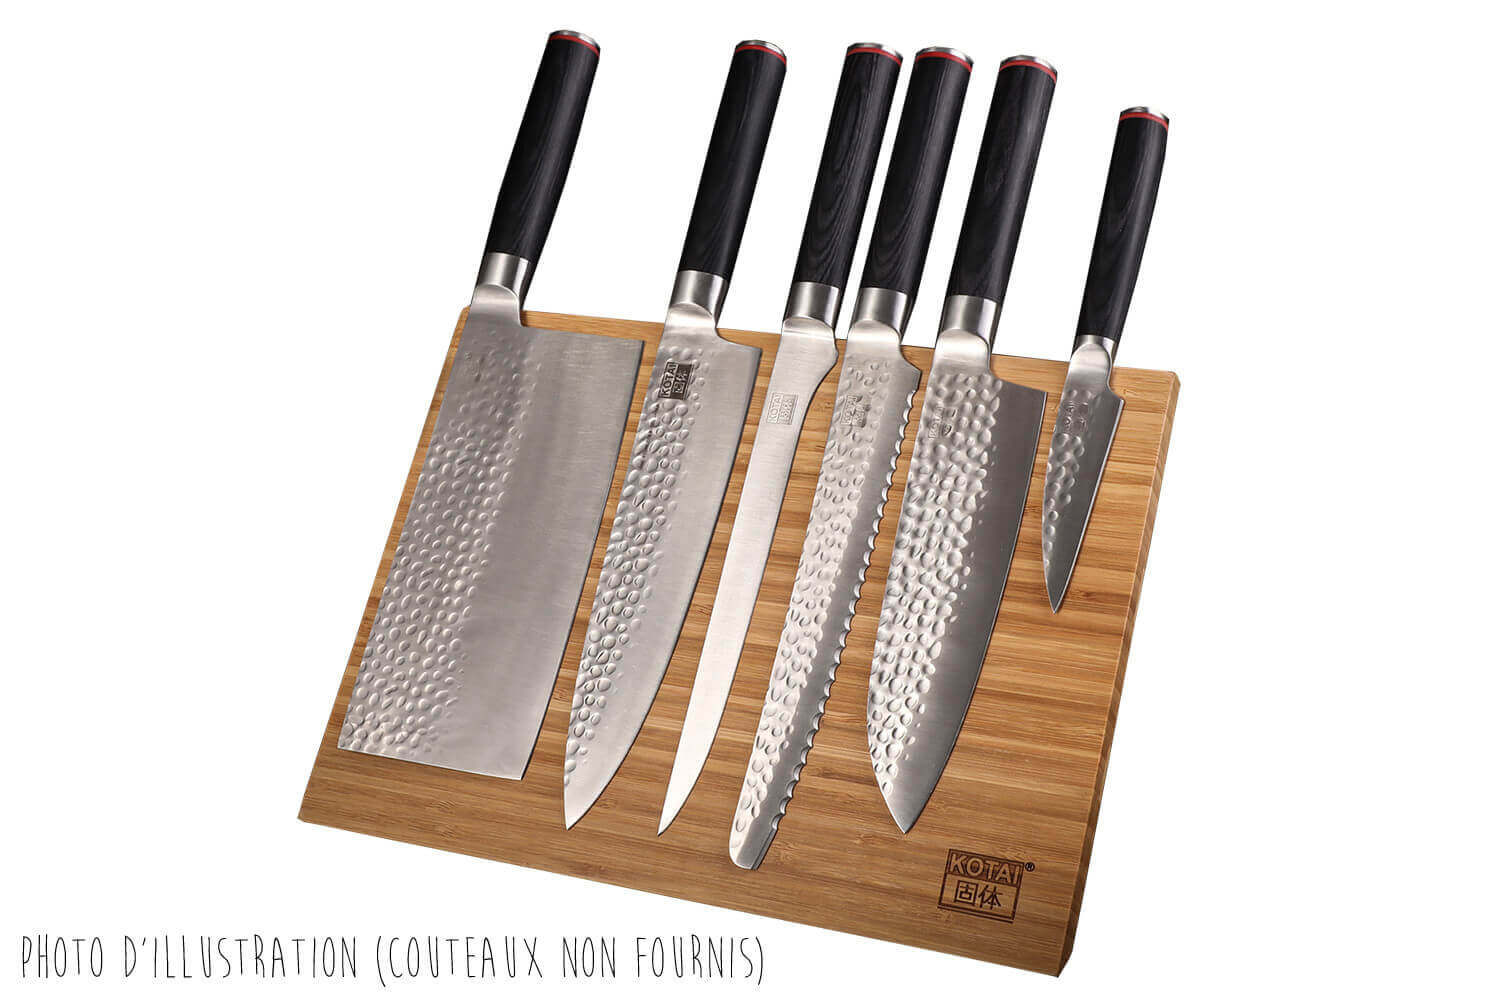 Barre aimantée pour couteaux de cuisine Déglon 32 cm